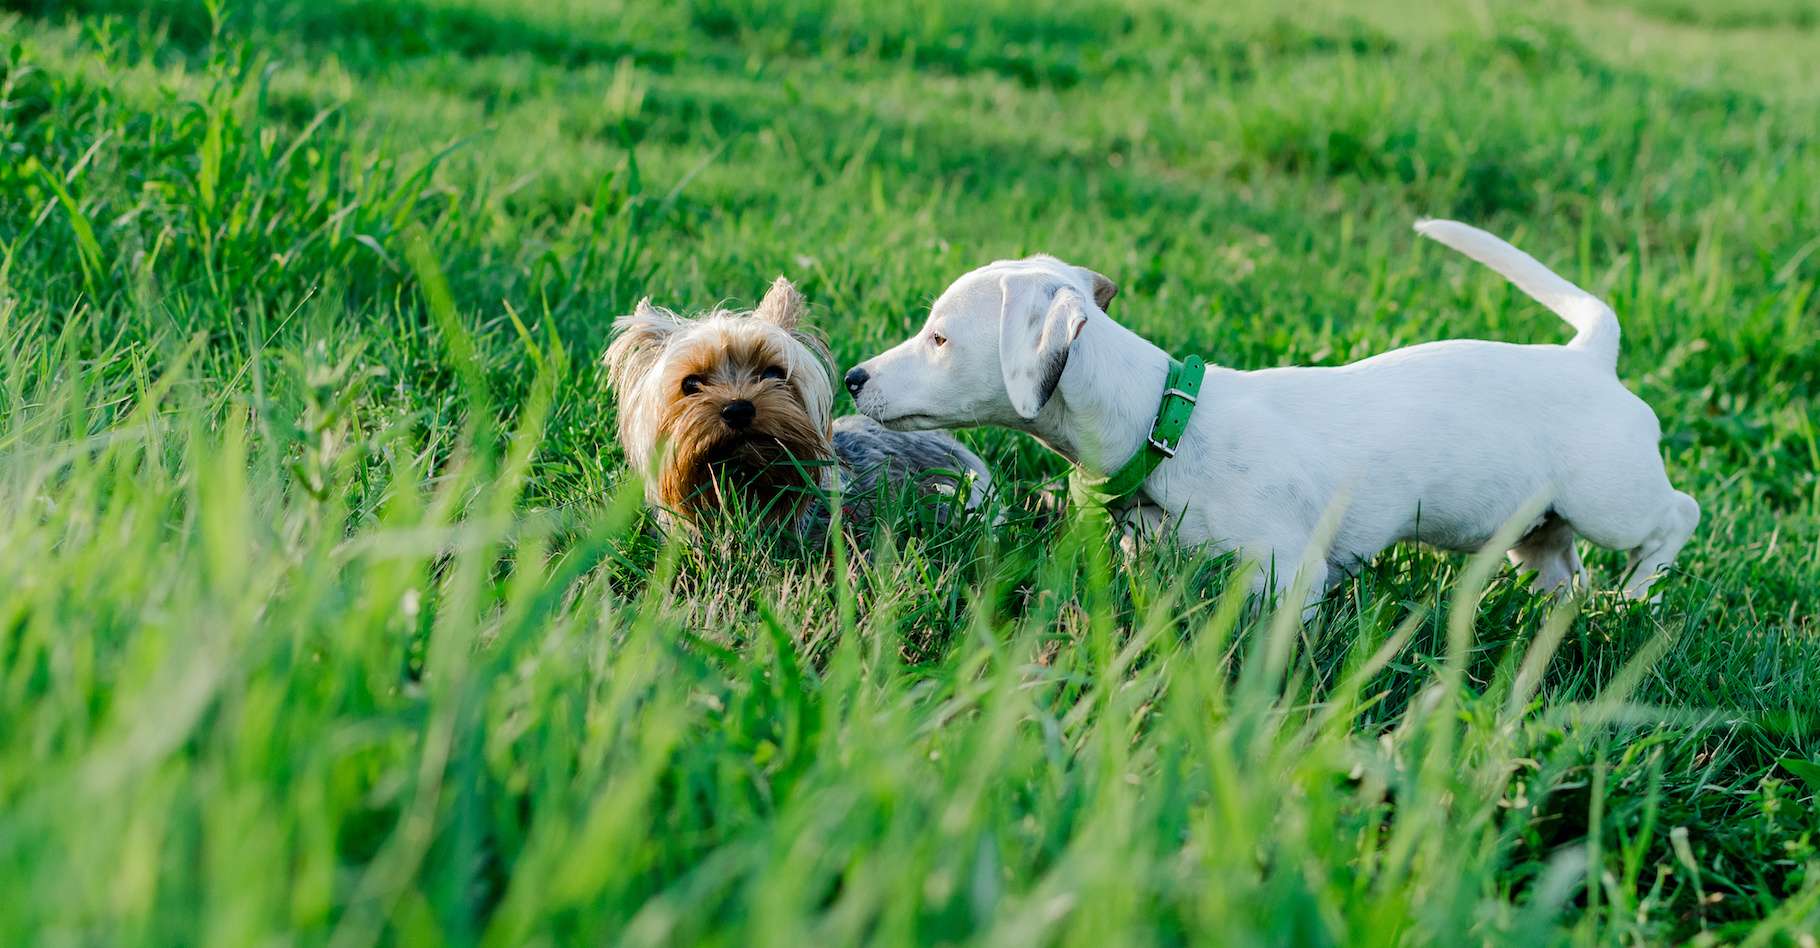 Les Jack Russel Terriers et les Yorkhire Terriers sont les chiens qui présentent l’espérance de vie à la naissance la plus élevée. © focusandblur, Adobe Stock